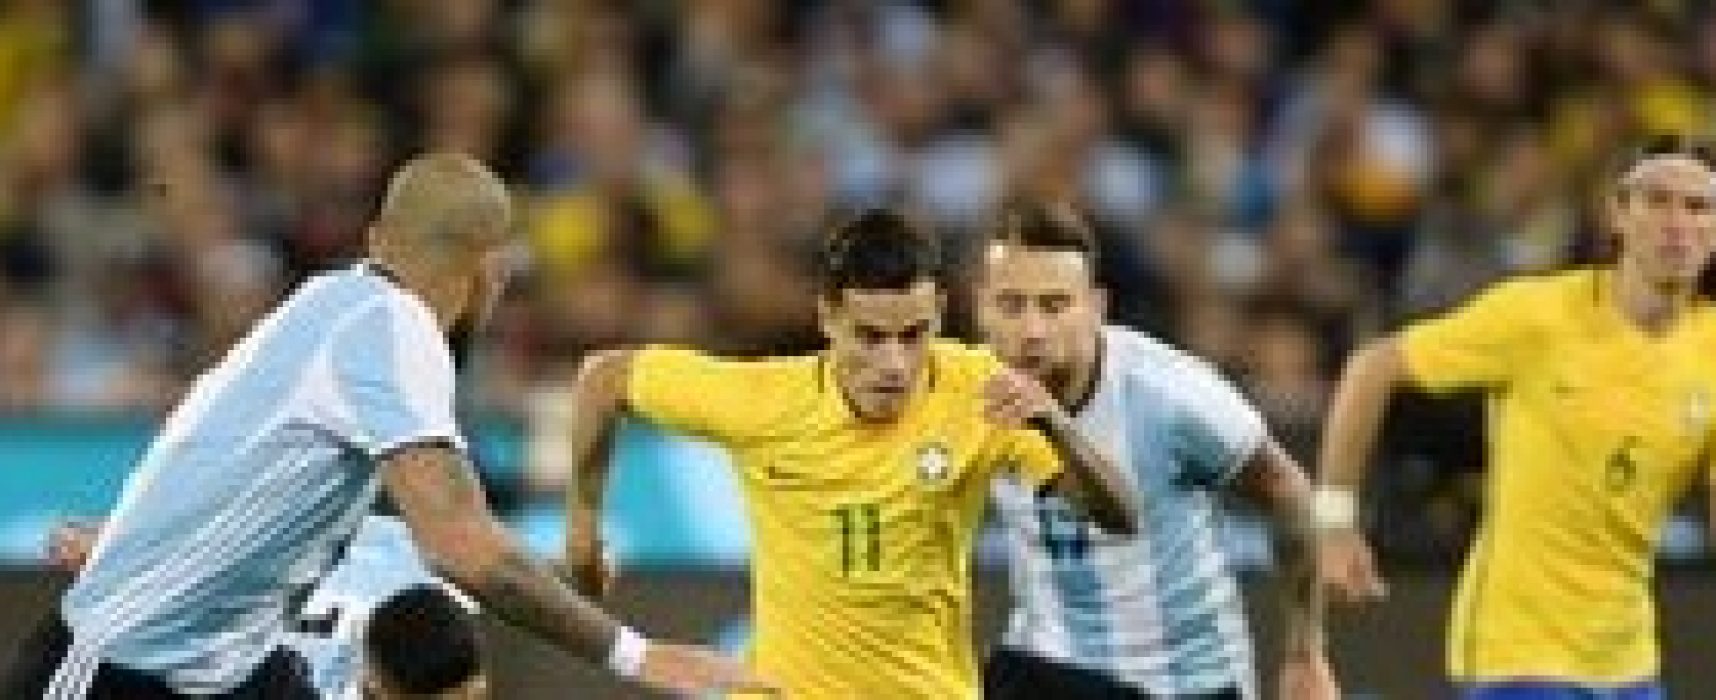 Brasil e Argentina decidem nesta terça vaga na final da Copa América